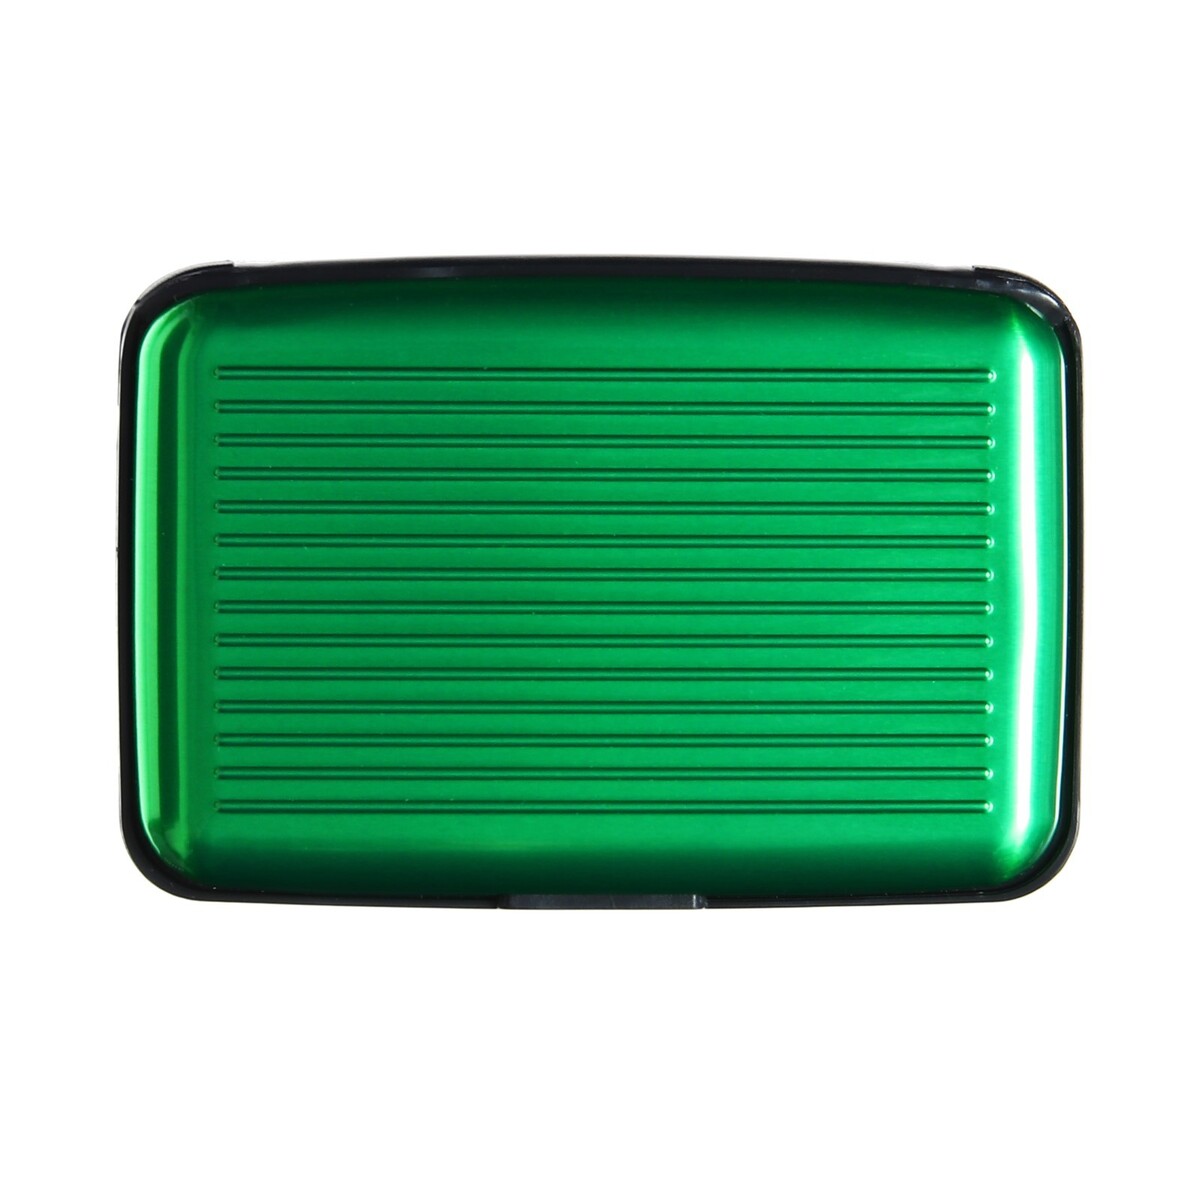 Визитница пластиковая, металлическая, с отделениями внутри, зеленая визитница металлическая горизонтальная серебристая